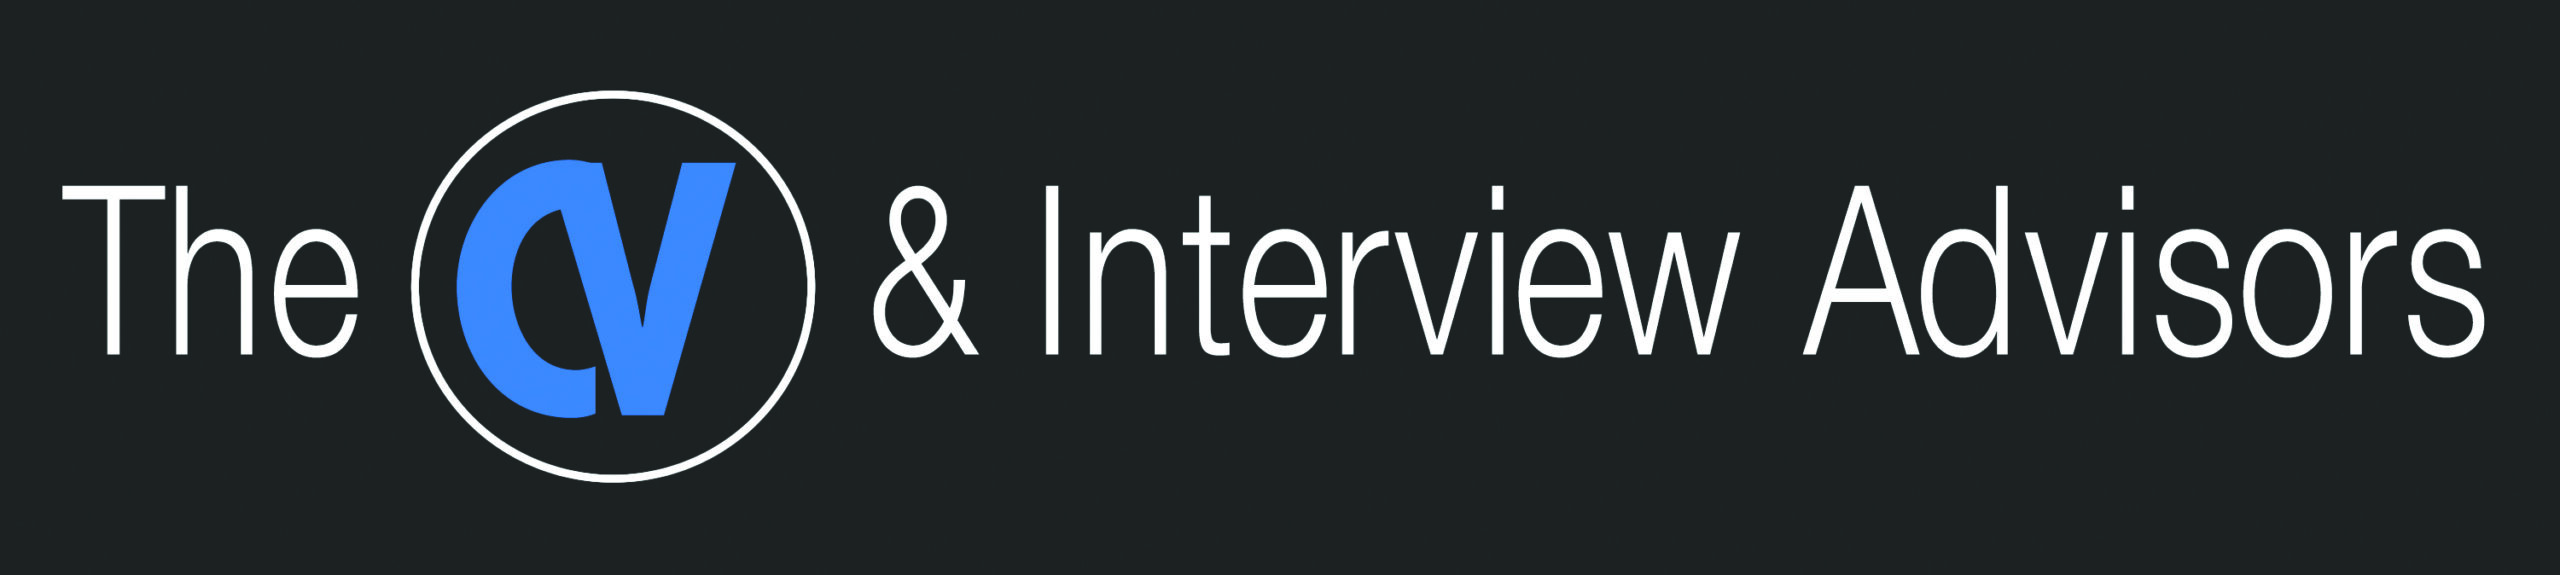 CV & Interview Advisors logo